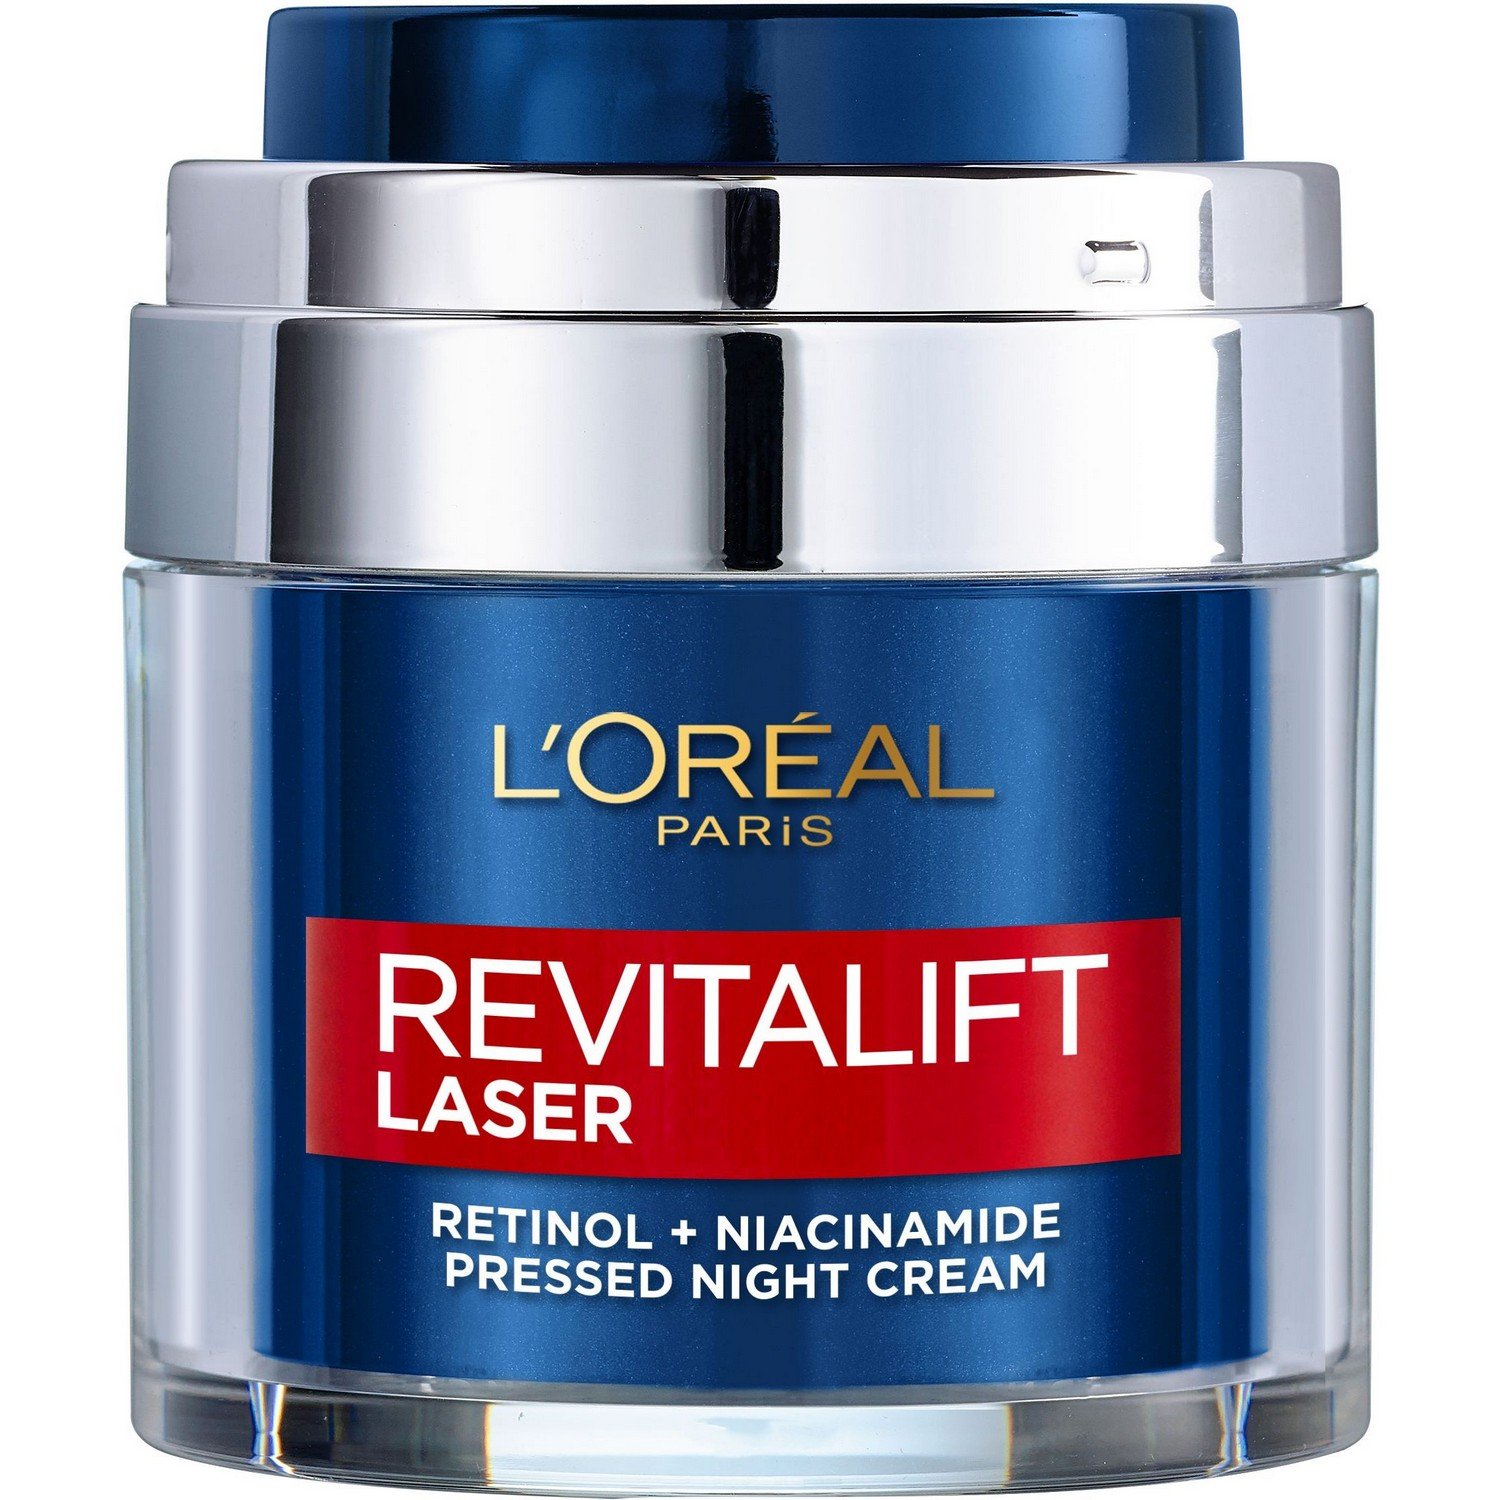 Ночной крем L'Oreal Paris Revitalift Lazer против морщин, для улучшения тона кожи лица, с ретинолом и никотинамидом, 50 мл - фото 1